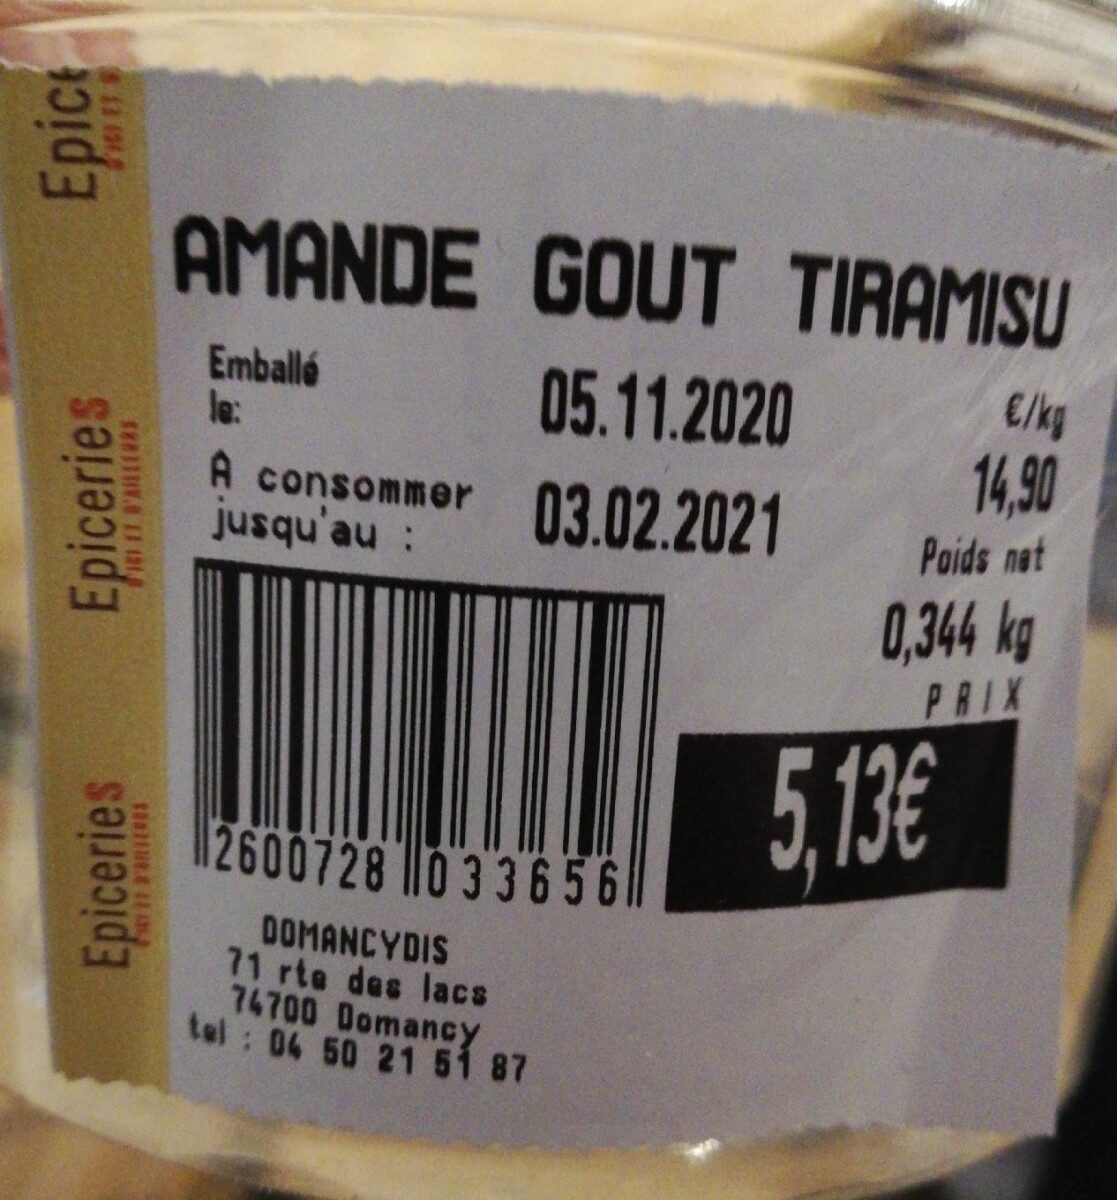 Amandes goût tiramisu - Product - fr